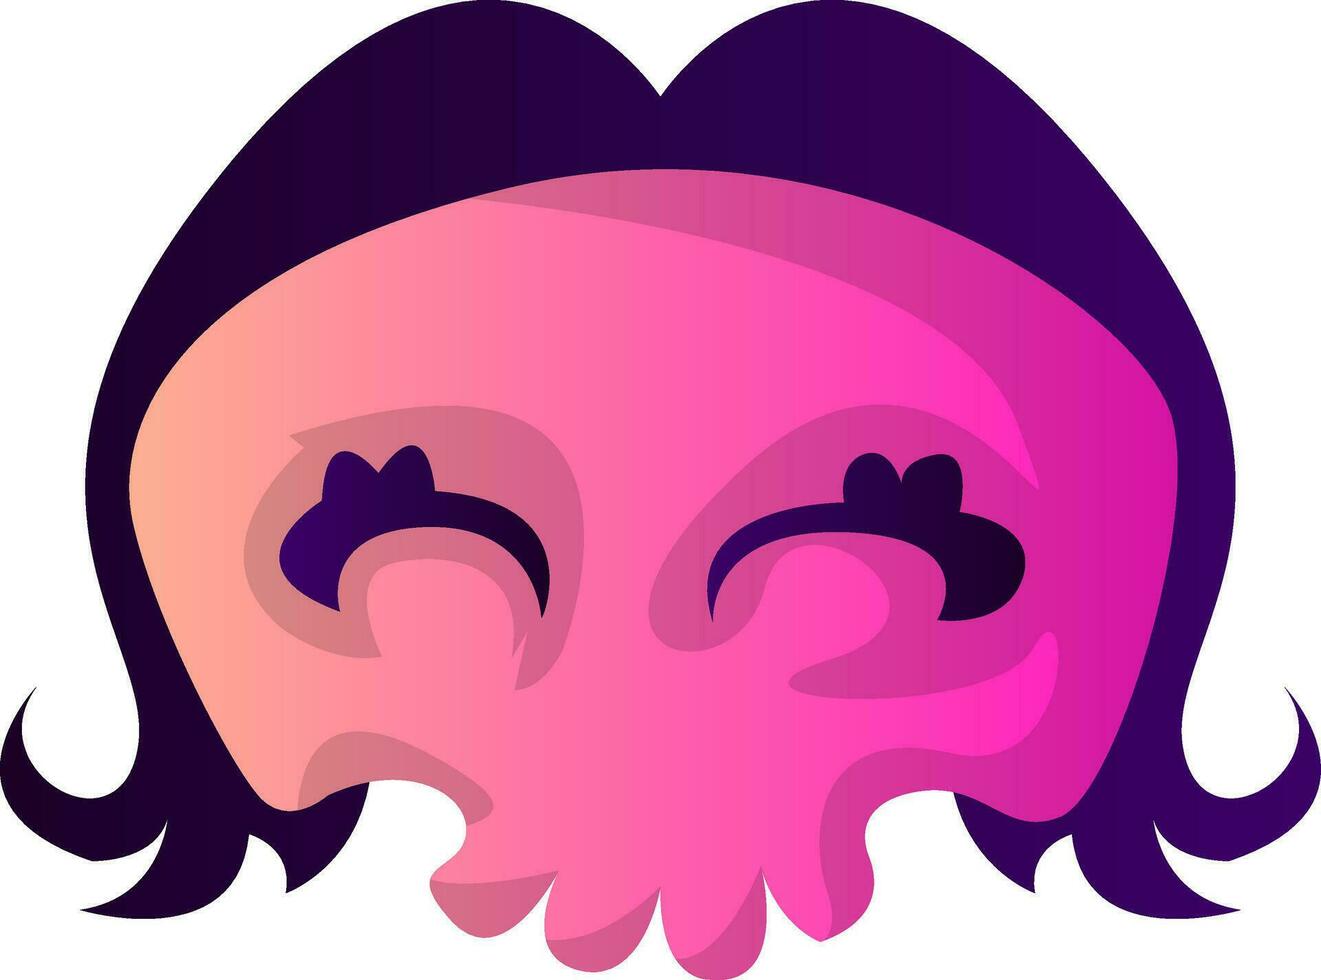 süß Rosa Karikatur Schädel mit lila Haar Vektor illustartion auf Weiß Hintergrund